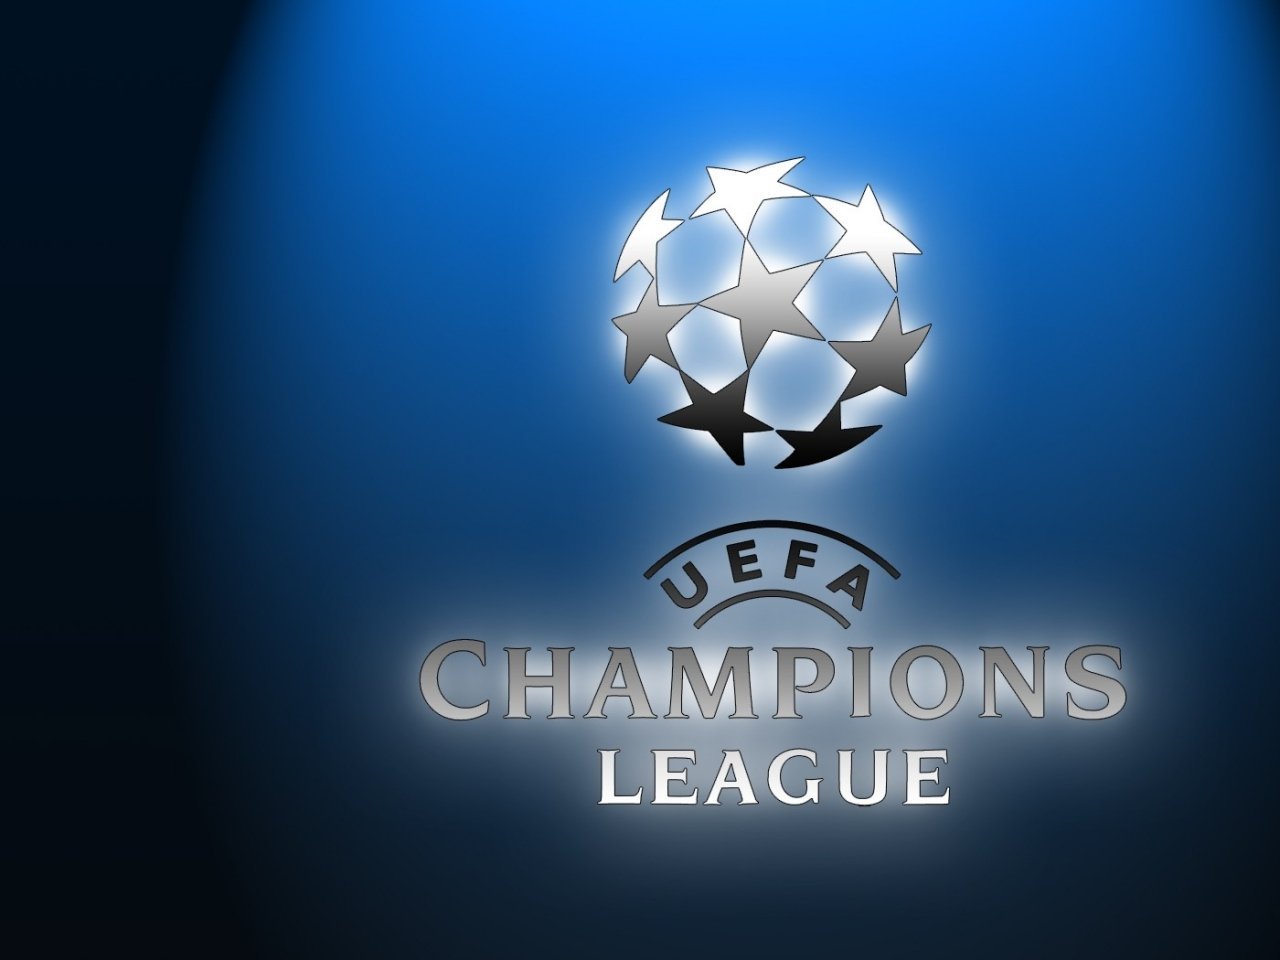 Эмблема Лиги чемпионов УЕФА. Логотип Лиги чемпионов UEFA. UCL лига чемпионов лого. Лига чемпионов надпись. Бесплатная игра лига чемпионов